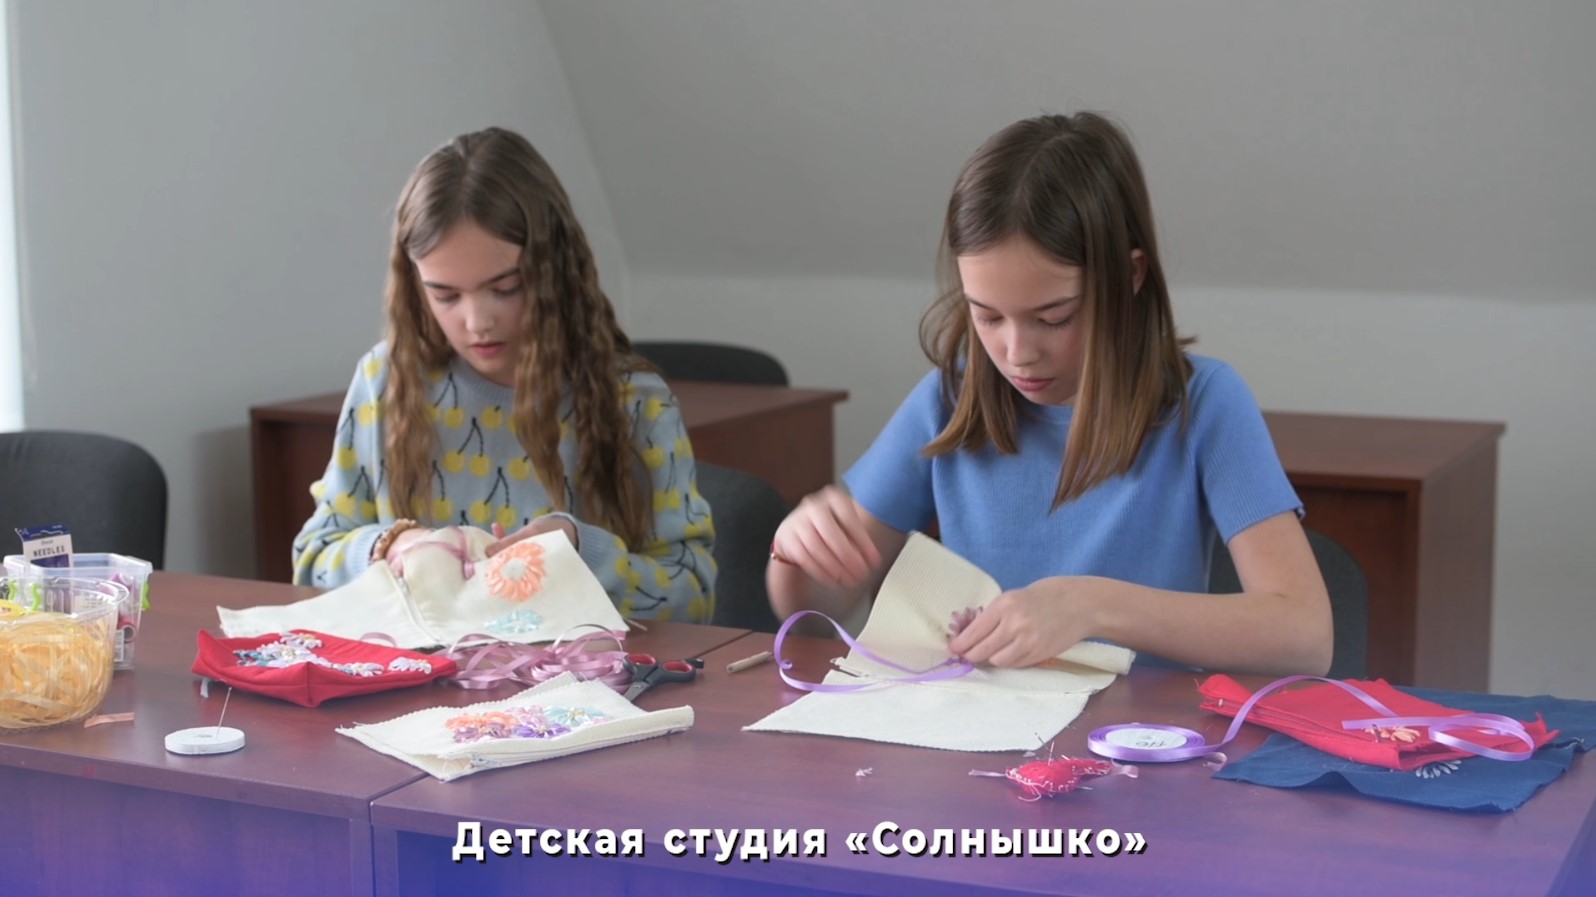 Детская студия «Солнышко» при Русском доме в Кишиневе